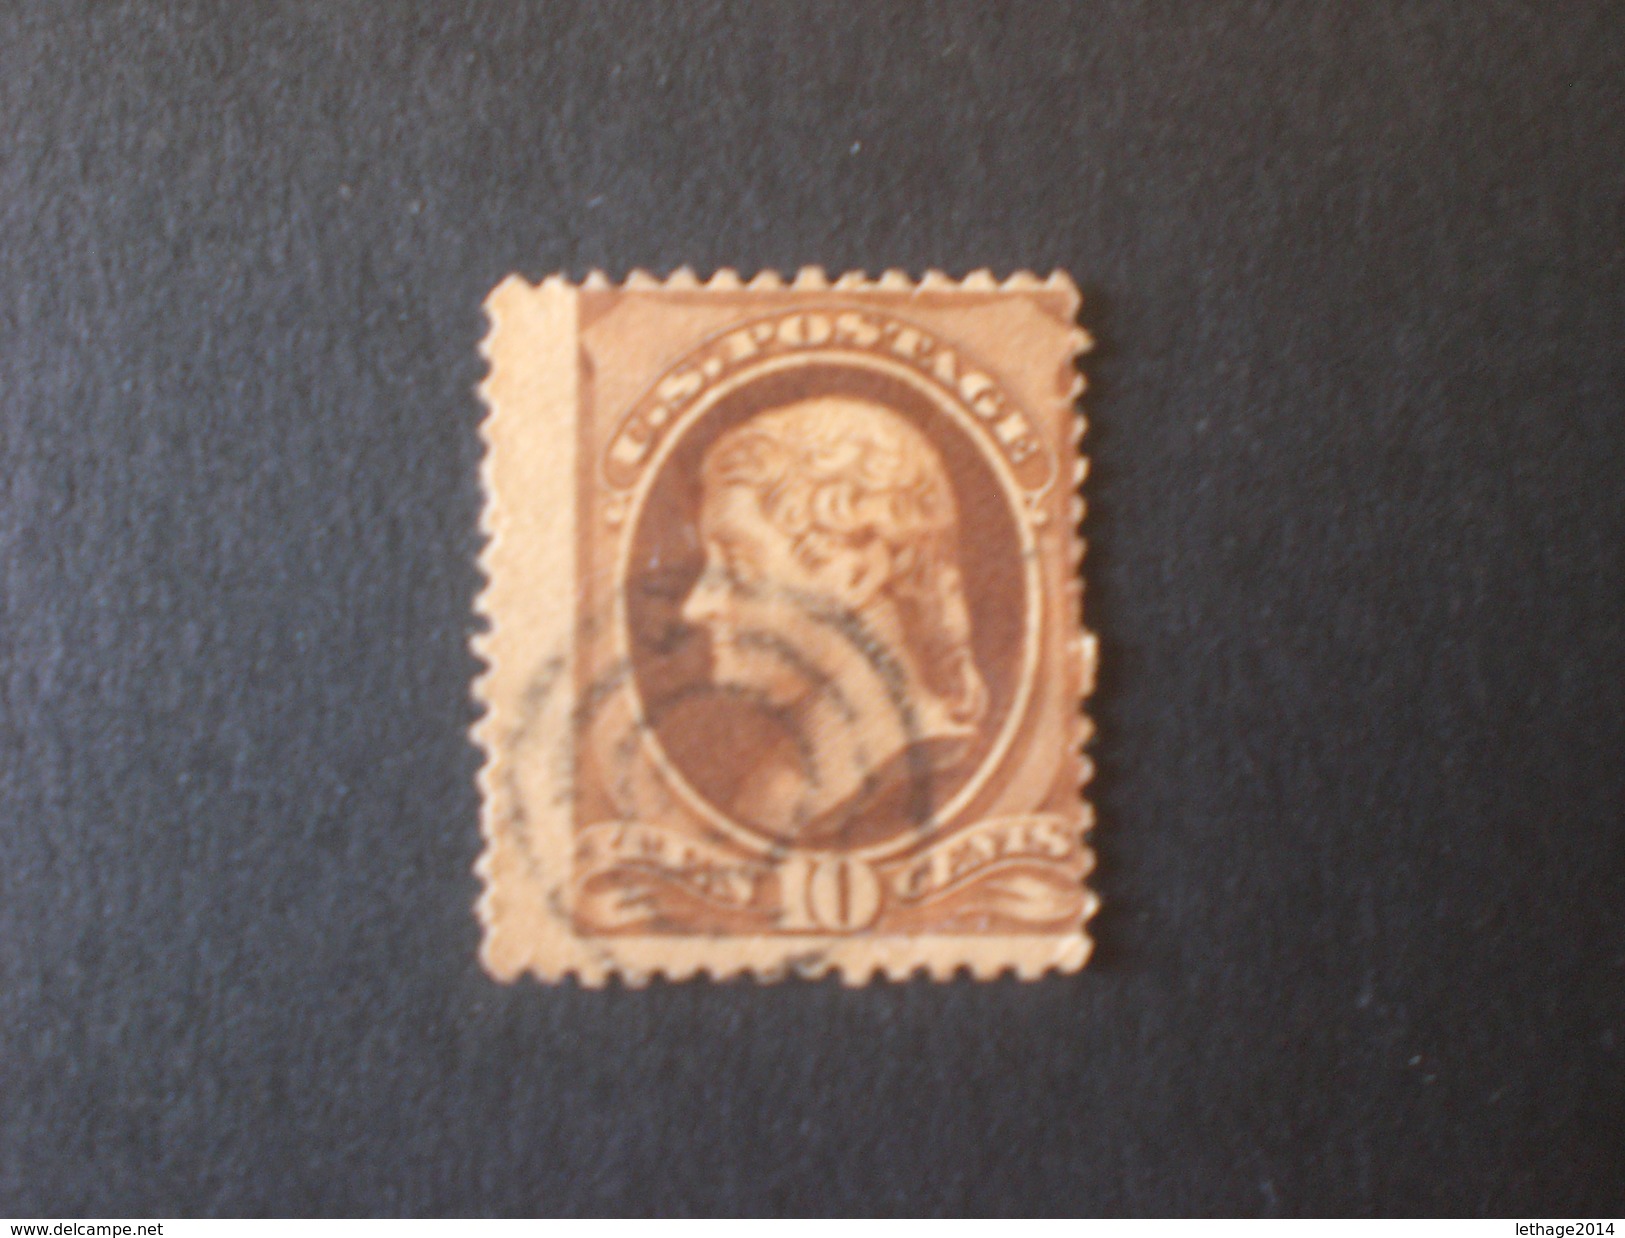 UNITED STATES EE.UU ÉTATS-UNIS US USA 1870 Jefferson Sepia Varieta Color Scott N.150 Perforation Moved - Usati